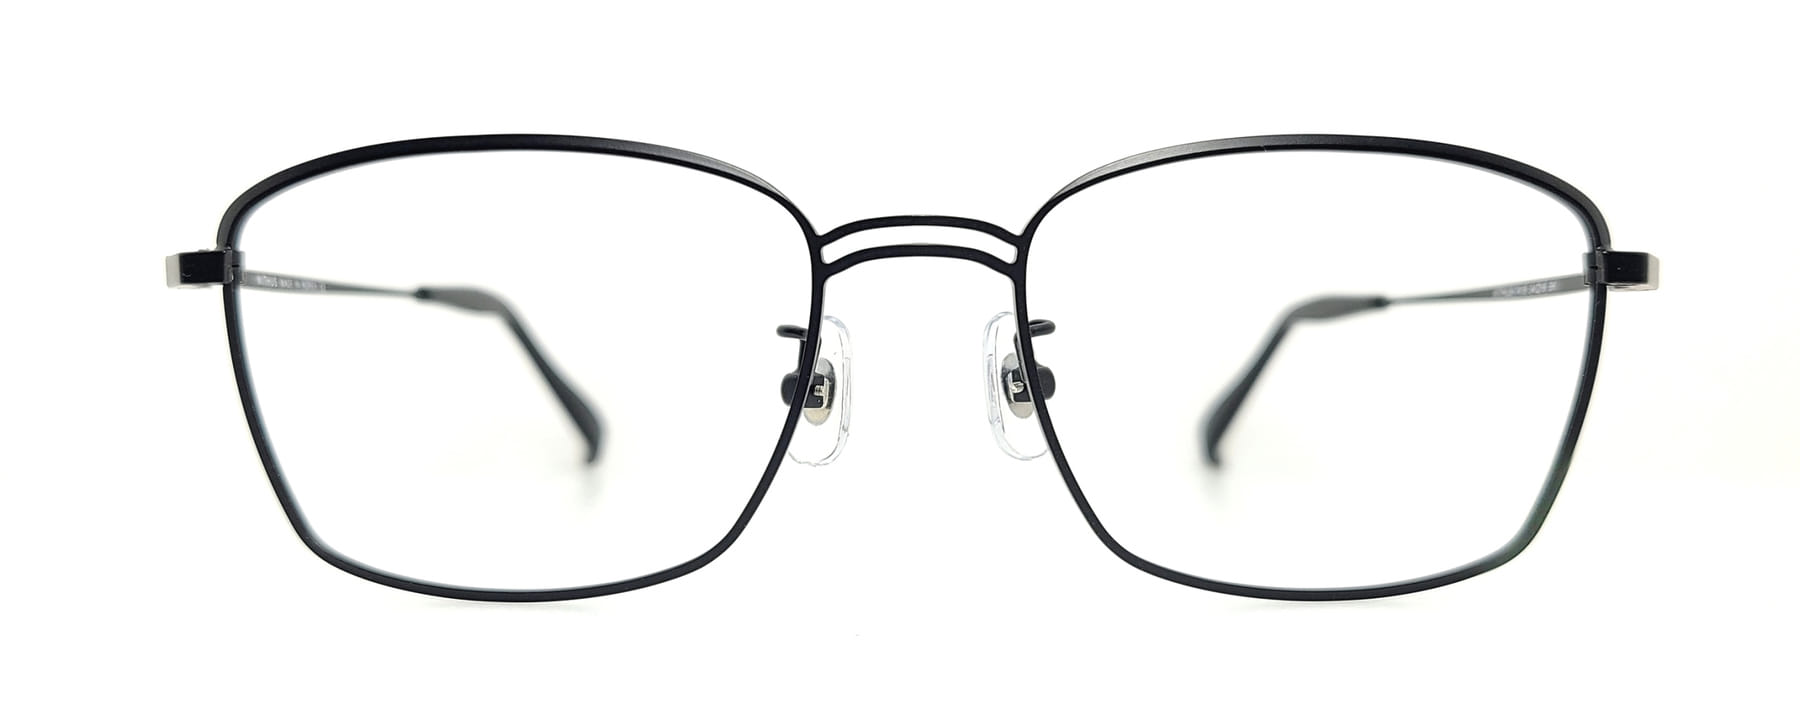 WITHUS-7418, Korean glasses, sunglasses, eyeglasses, glasses